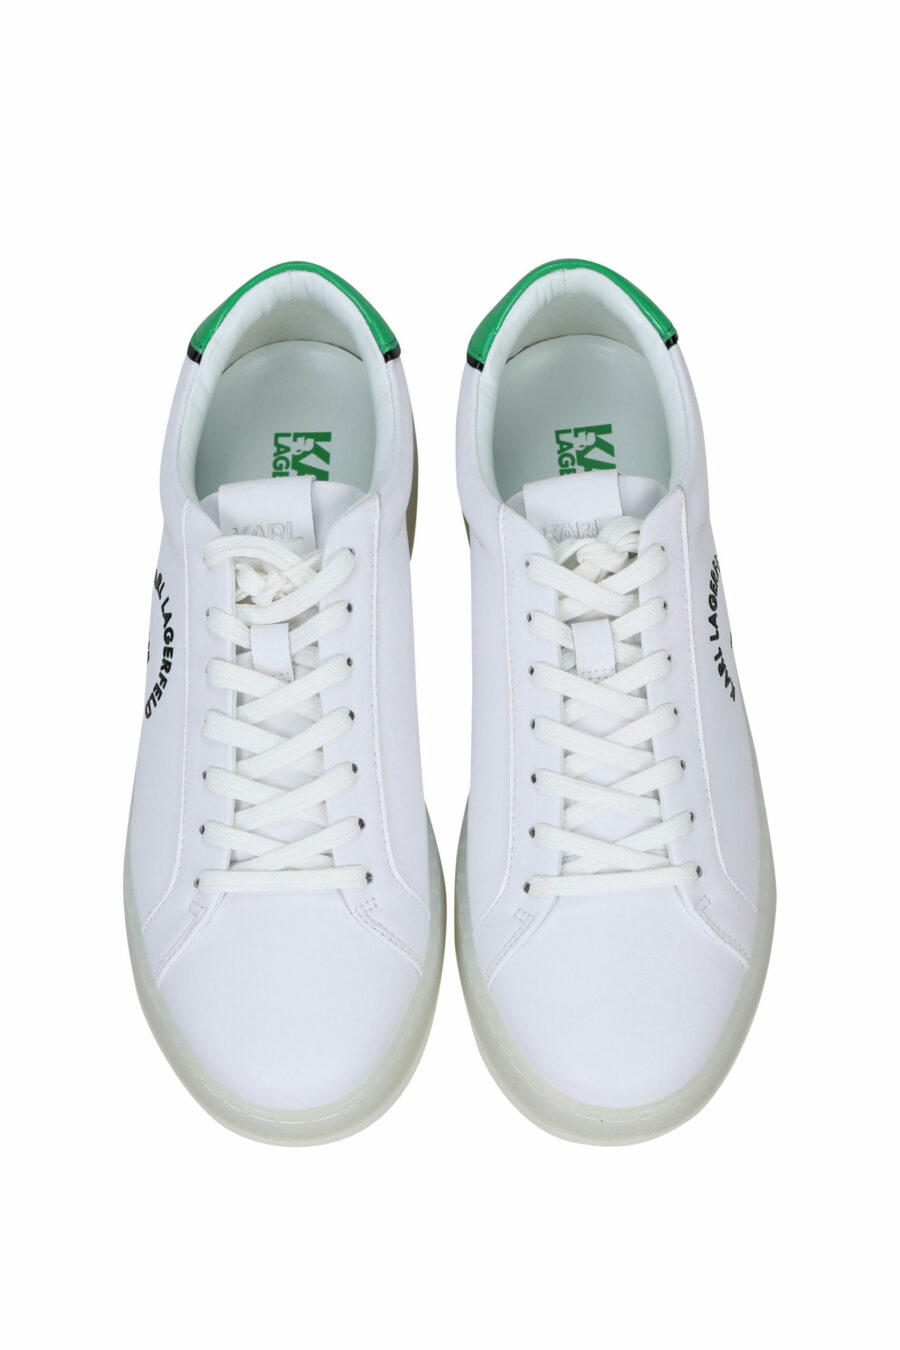 Sapatilhas brancas com pormenor verde e logótipo "st rue guillaume" - 5059529291289 4 scaled